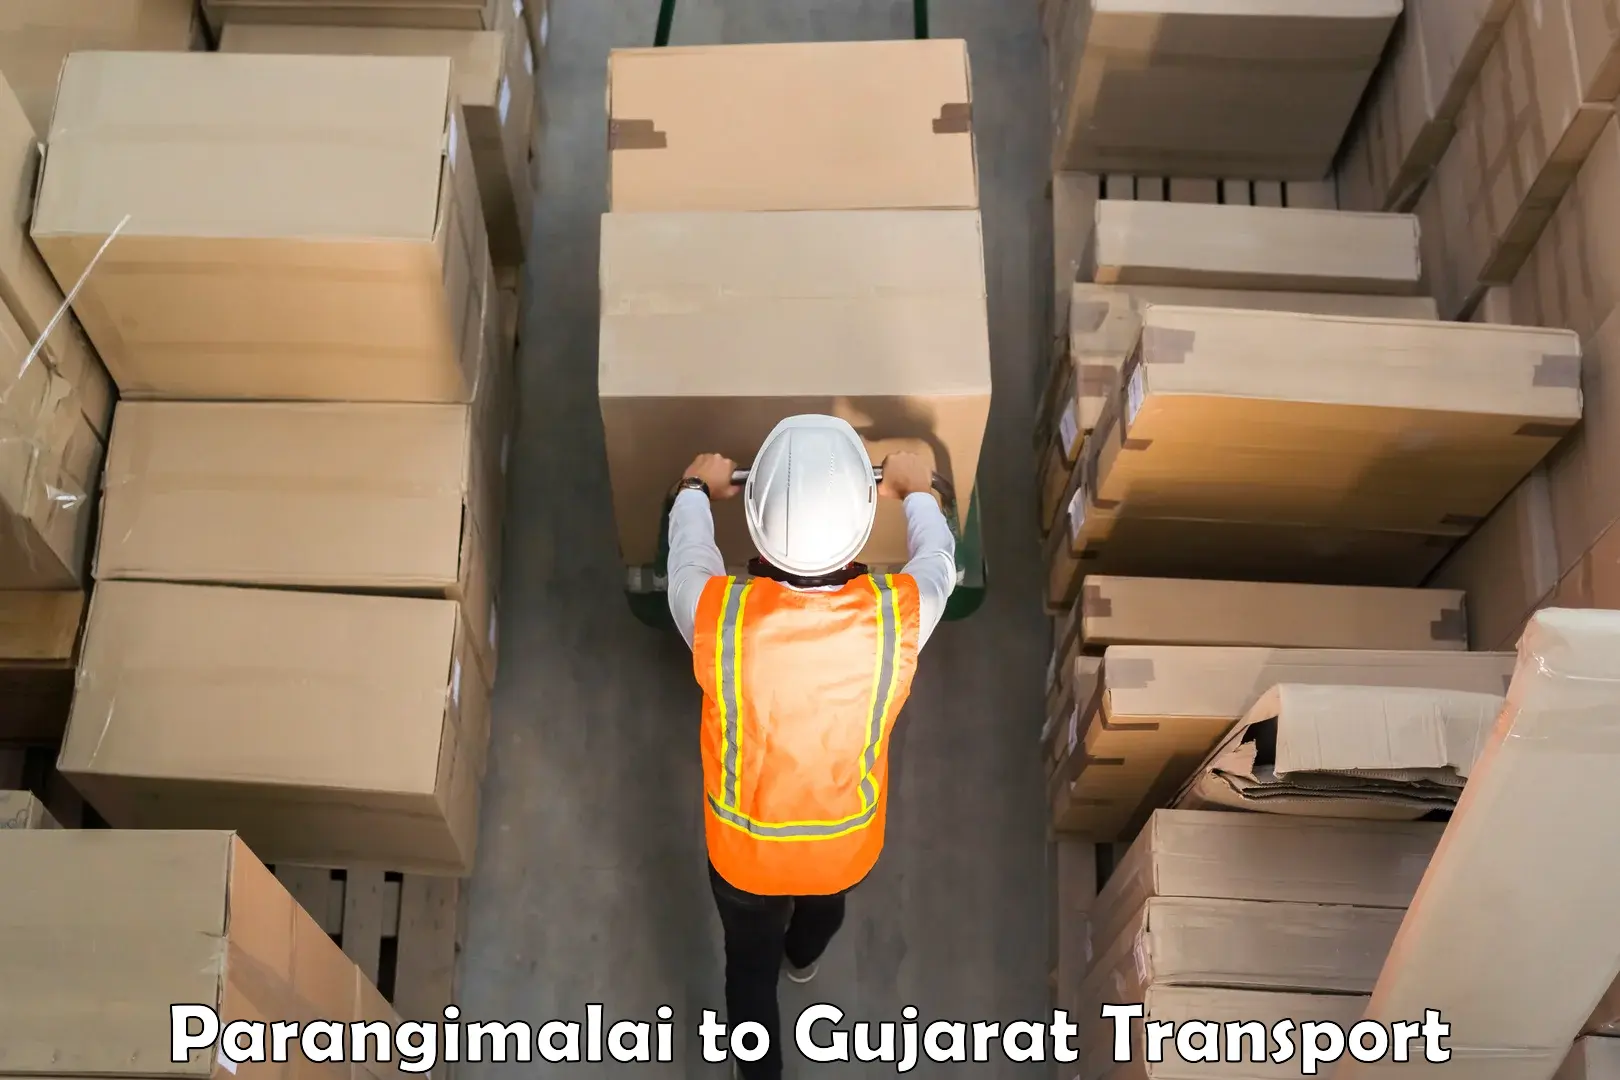 Container transport service Parangimalai to Rajula